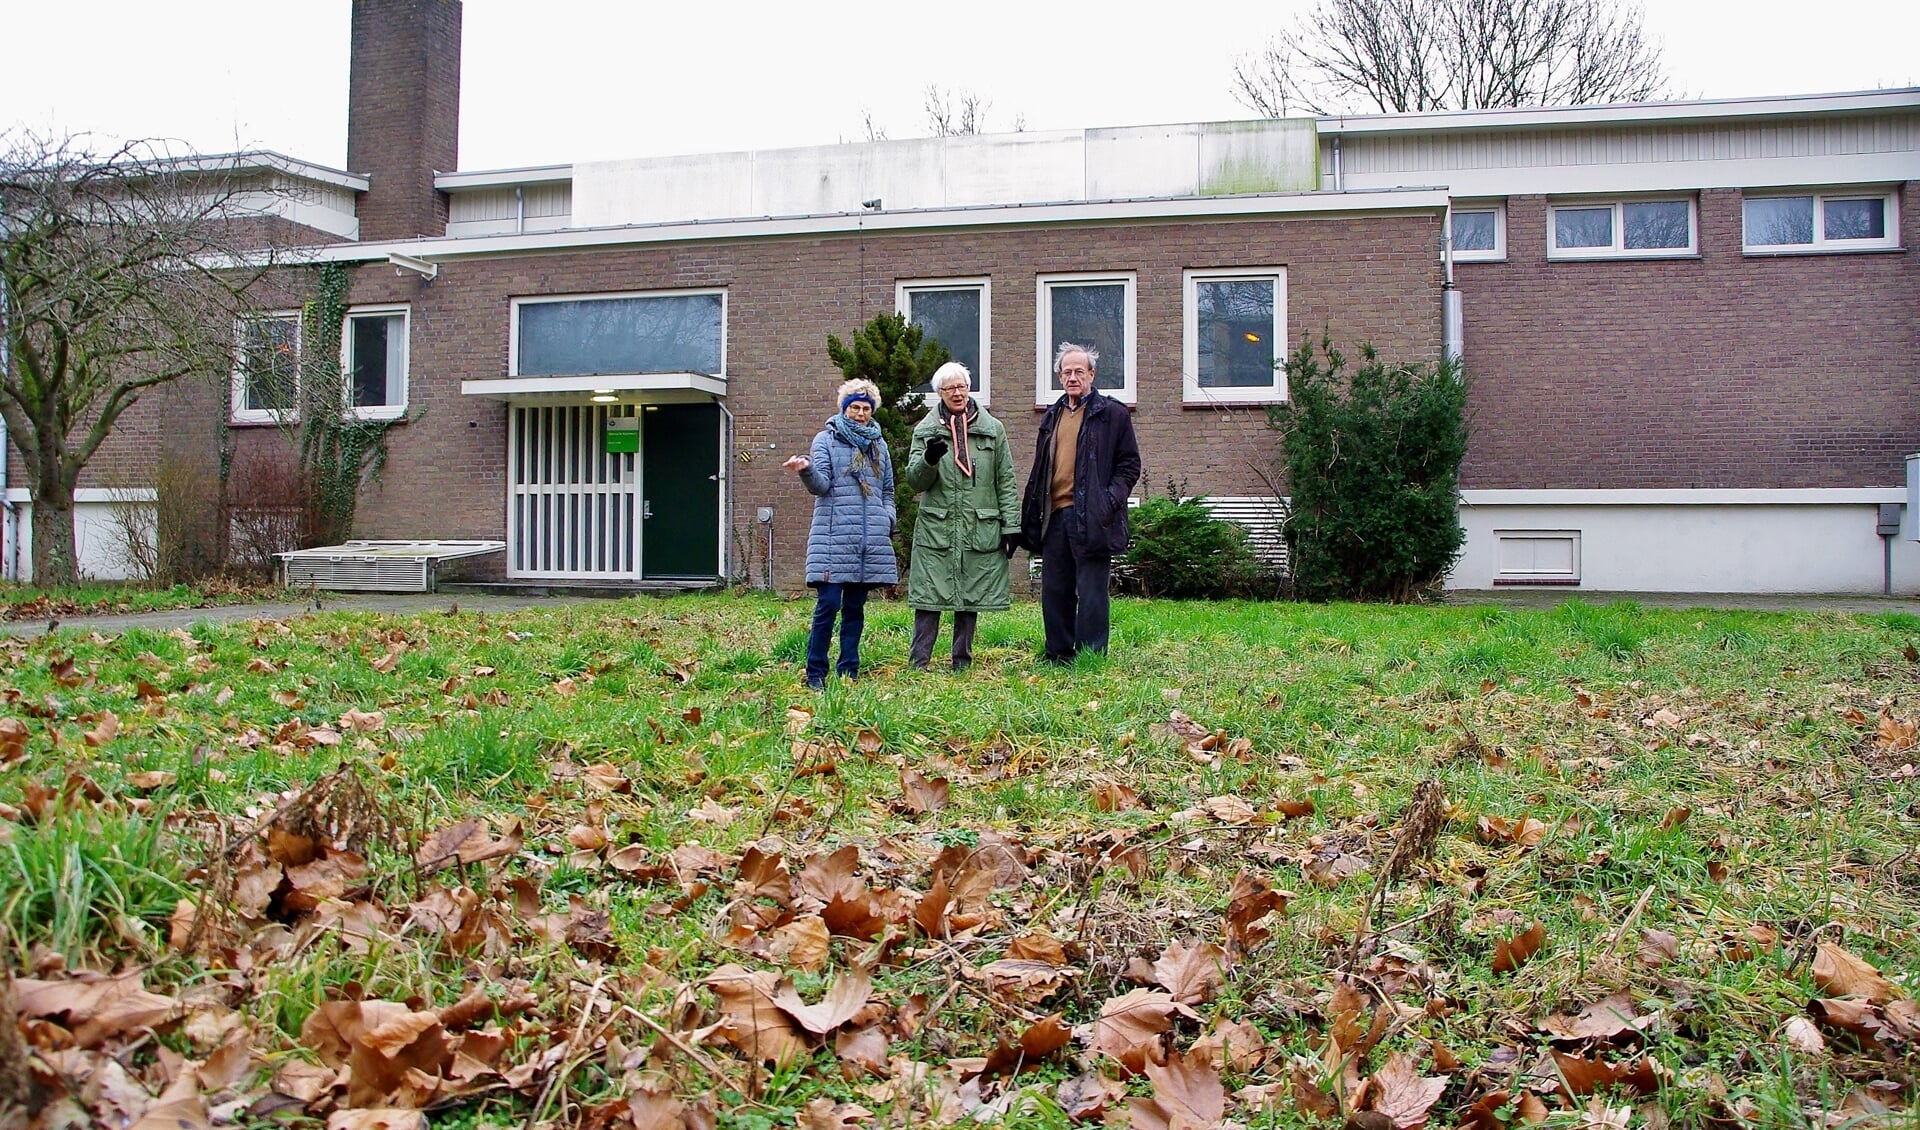 Henne van Bemmel, Anne van den Berg en Jaap Goekoop willen zich inzetten voor een mooie buurttuin. | Foto Willemien Timmers